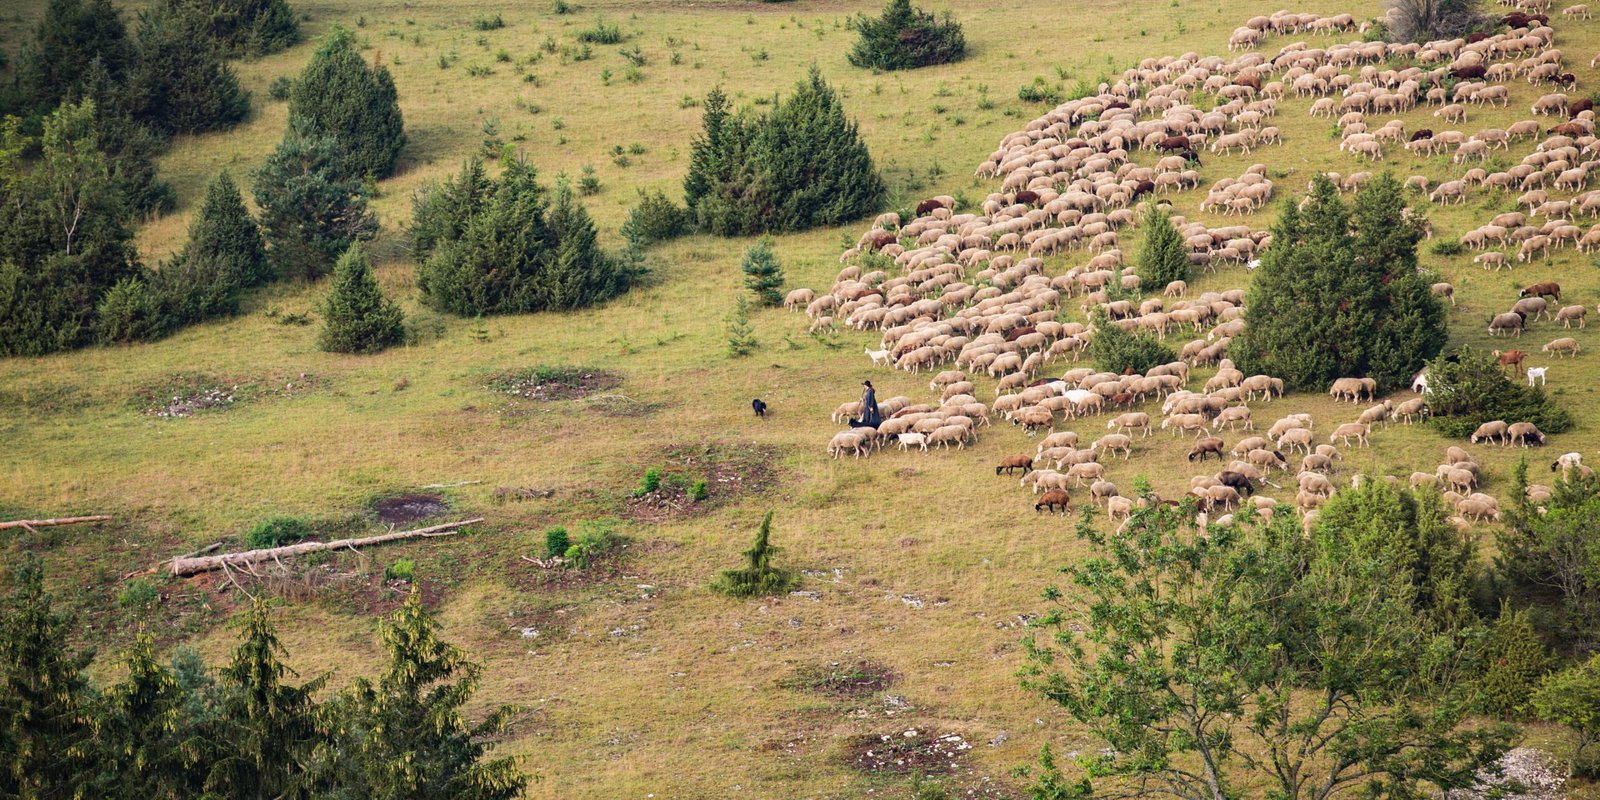 Schafe auf der Heide